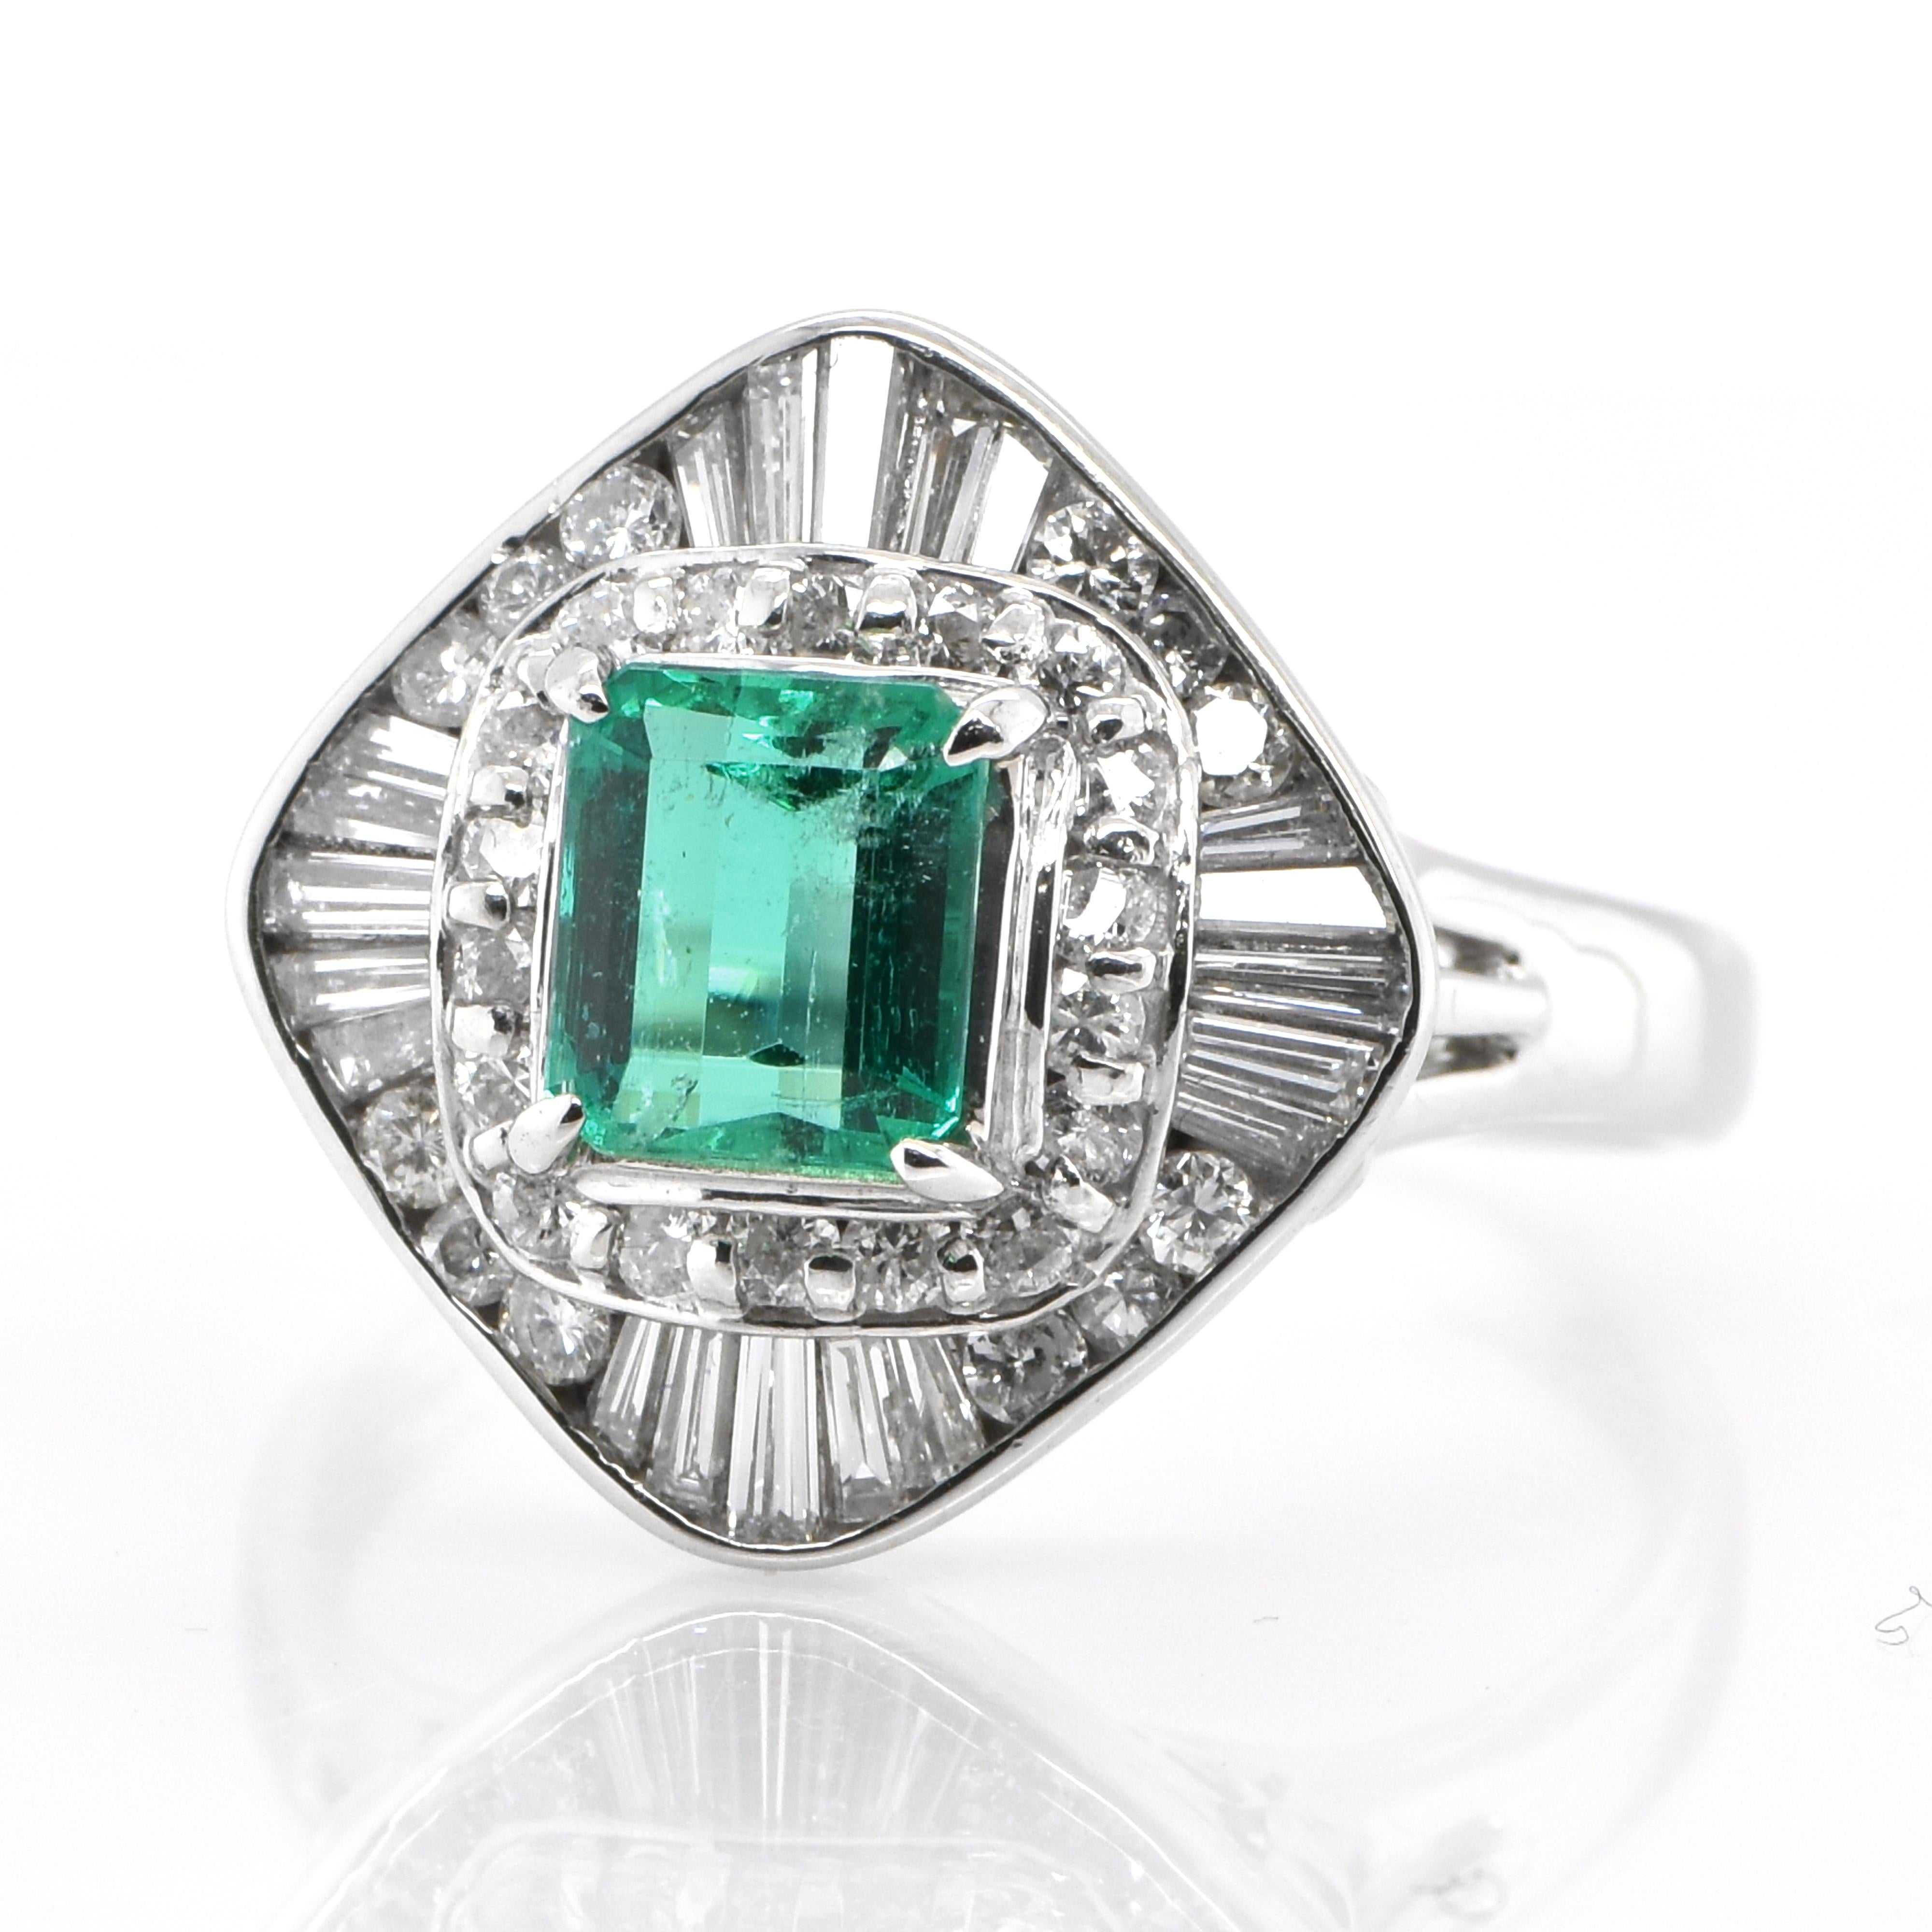 Ein atemberaubender Ring mit einem natürlichen Smaragd von 0,96 Karat und Diamanten von 0,85 Karat, gefasst in Platin. Seit Tausenden von Jahren bewundern die Menschen das Grün des Smaragds. Smaragde werden seit jeher mit den üppigsten Landschaften